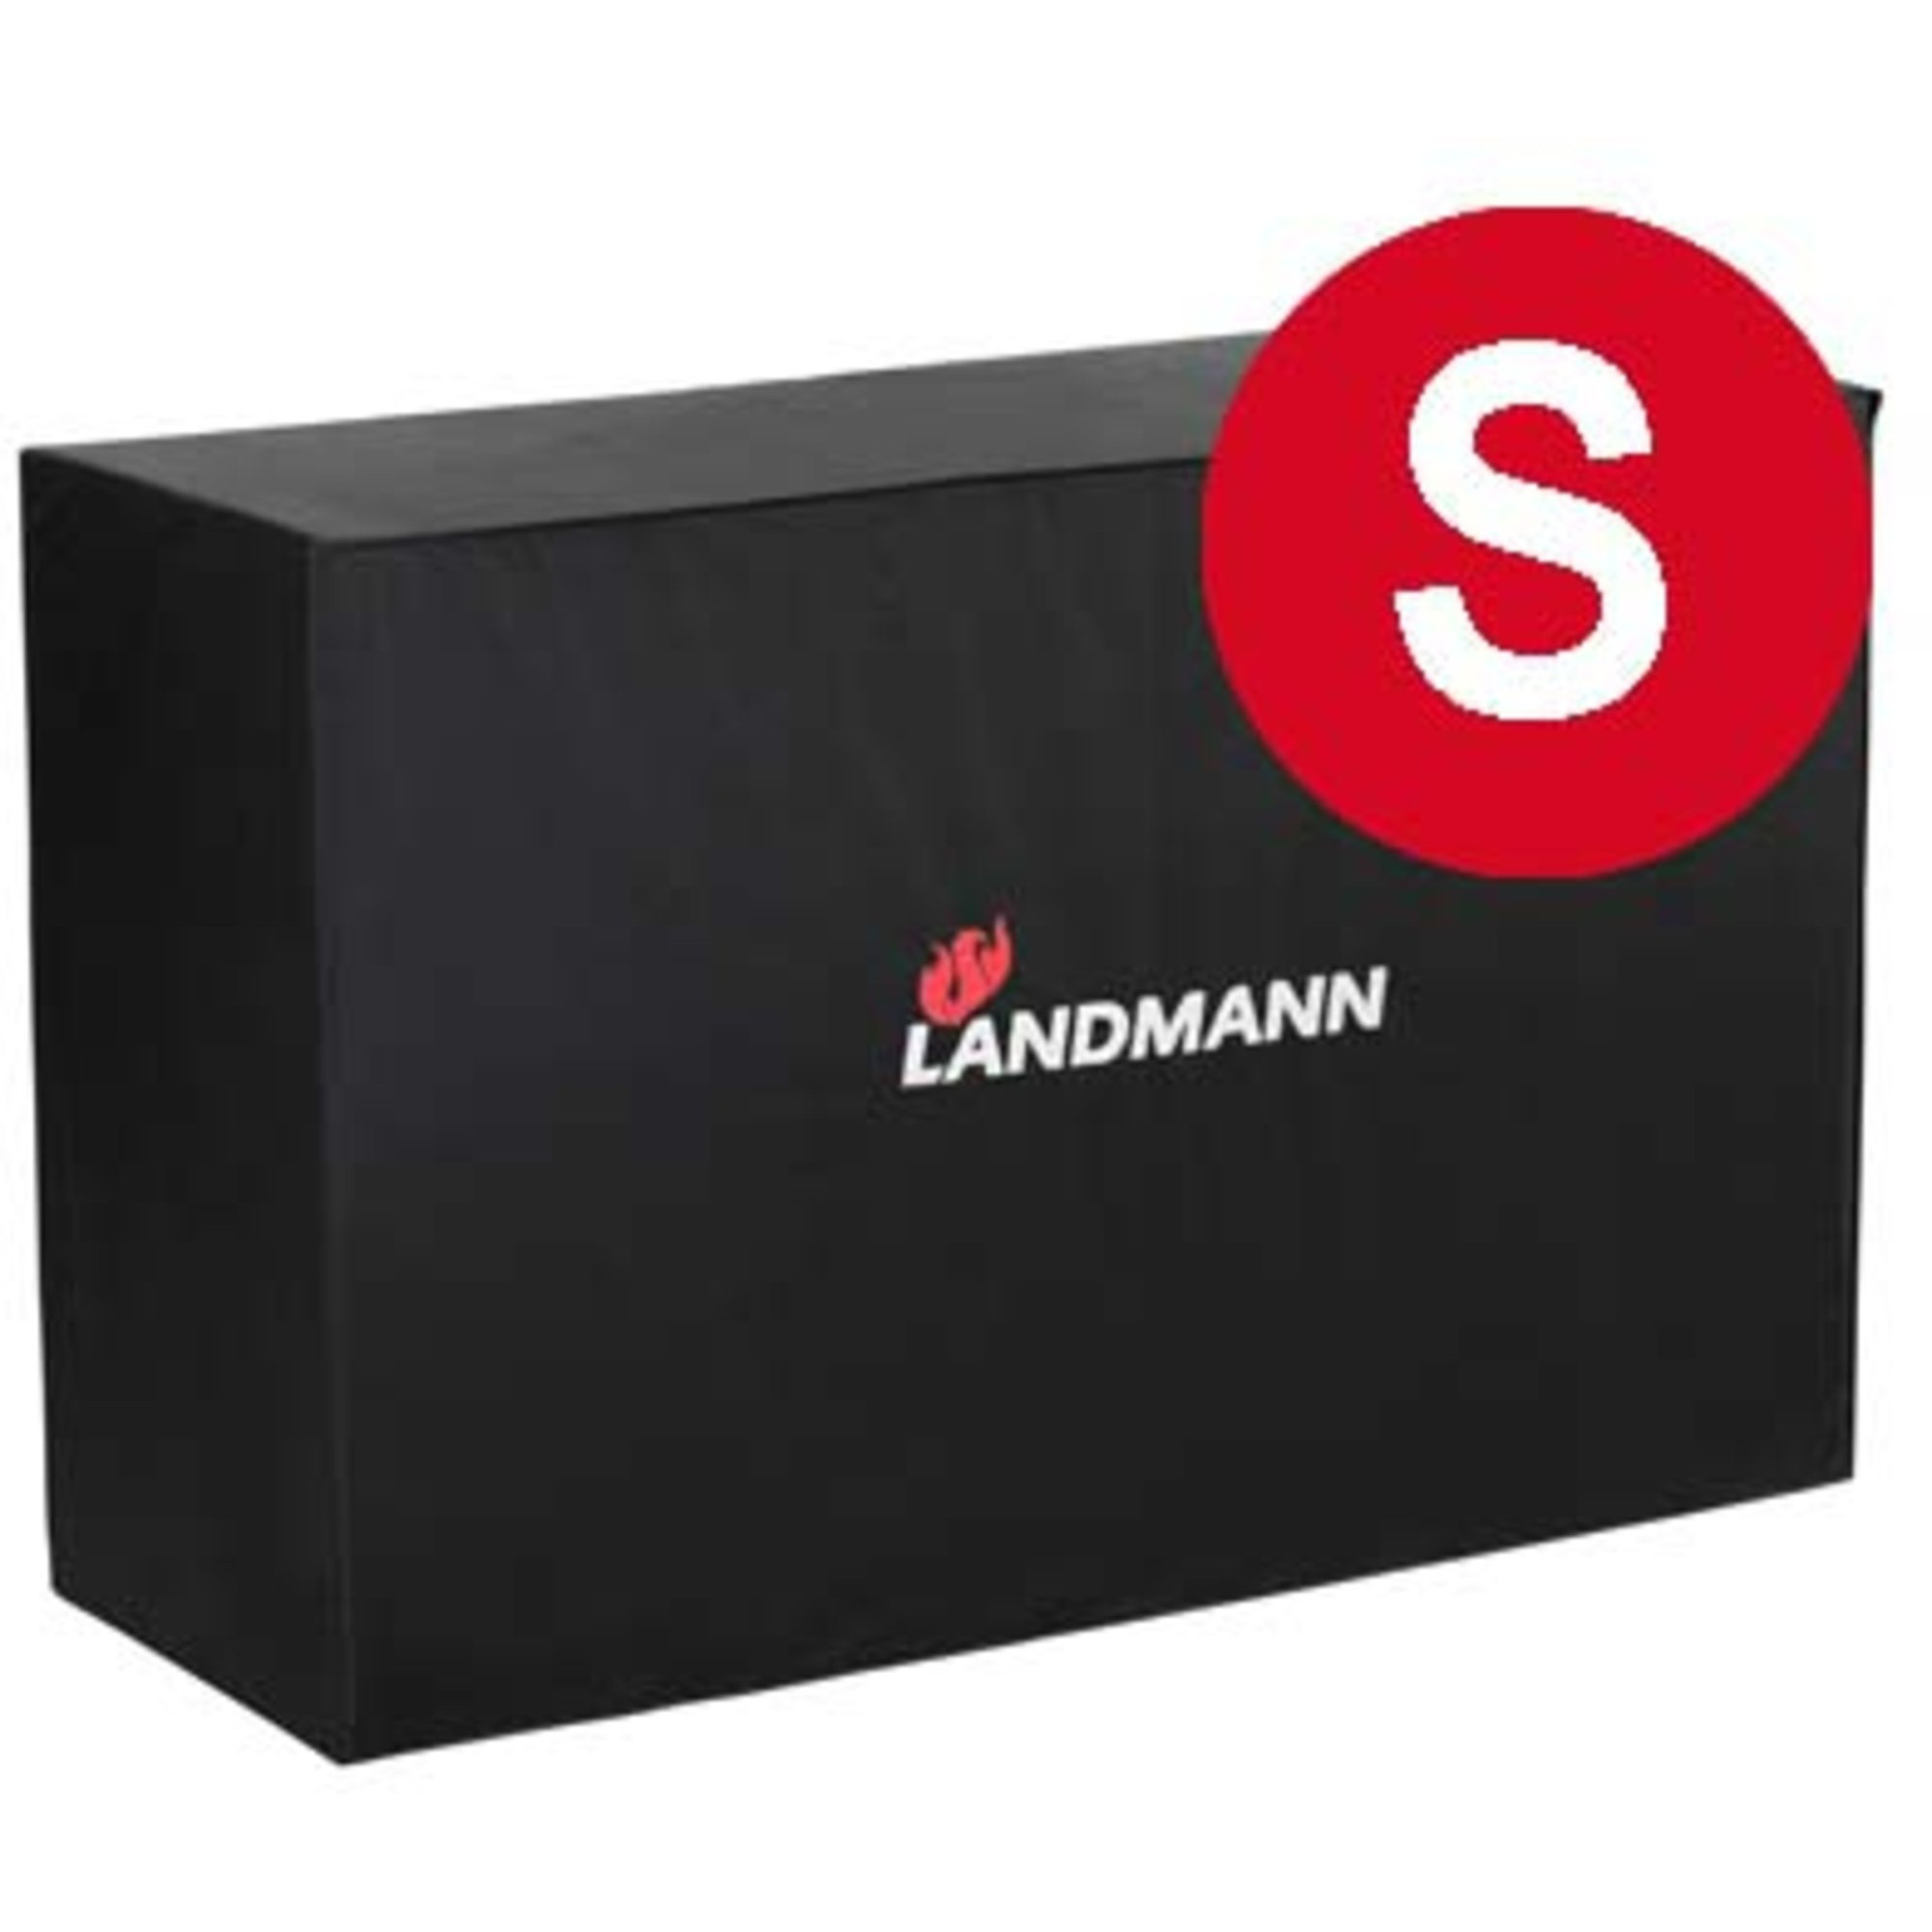 Landmann Overtræk Vinyl Small